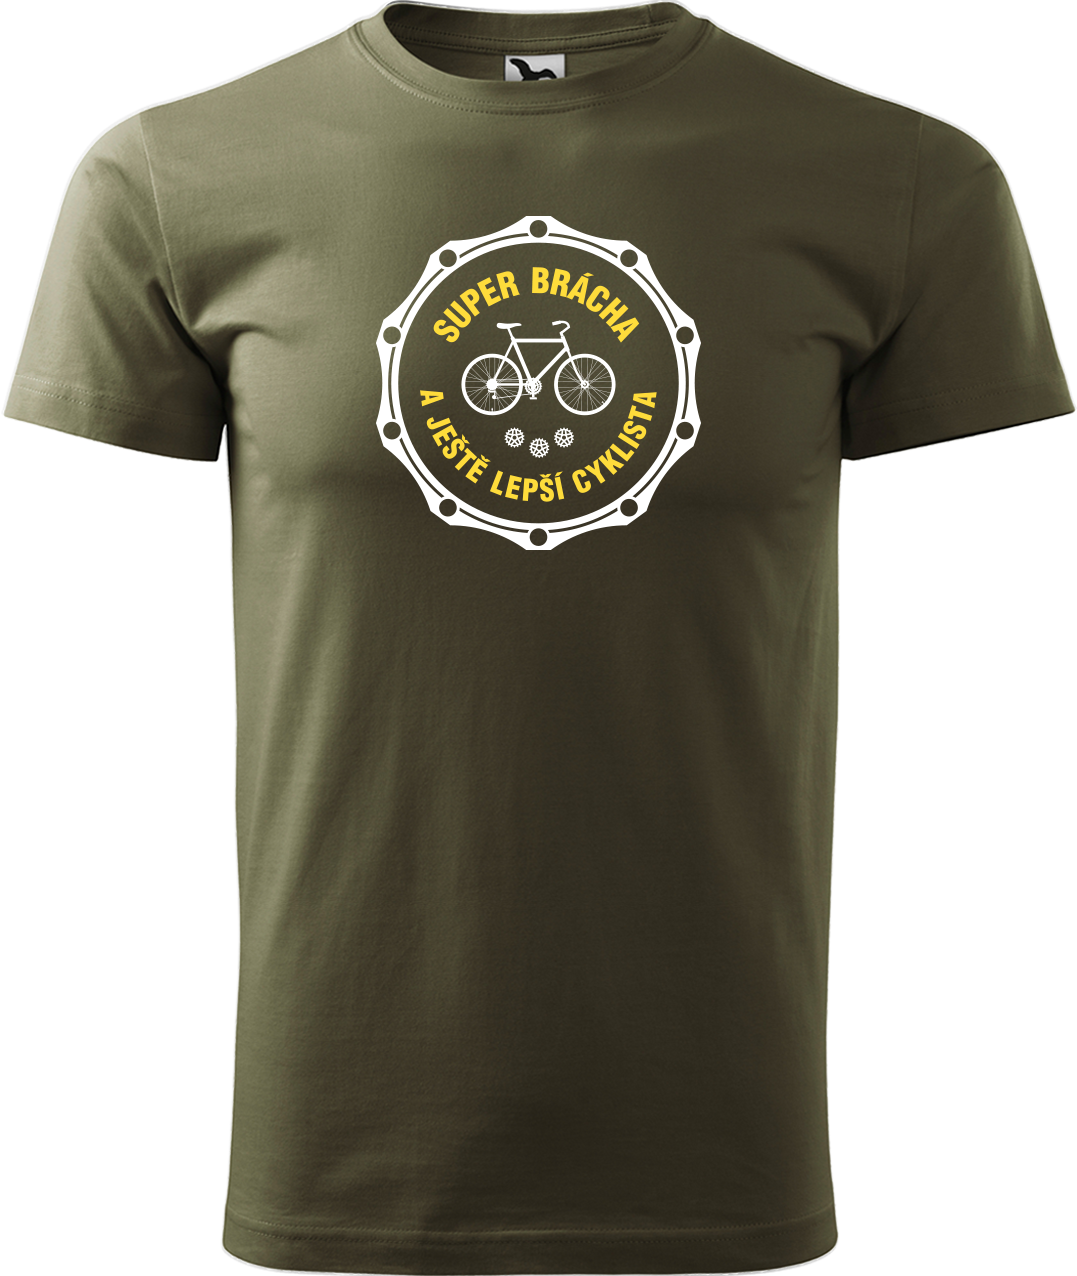 Pánské tričko pro cyklistu - Super brácha a ještě lepší cyklista Velikost: S, Barva: Military (69)